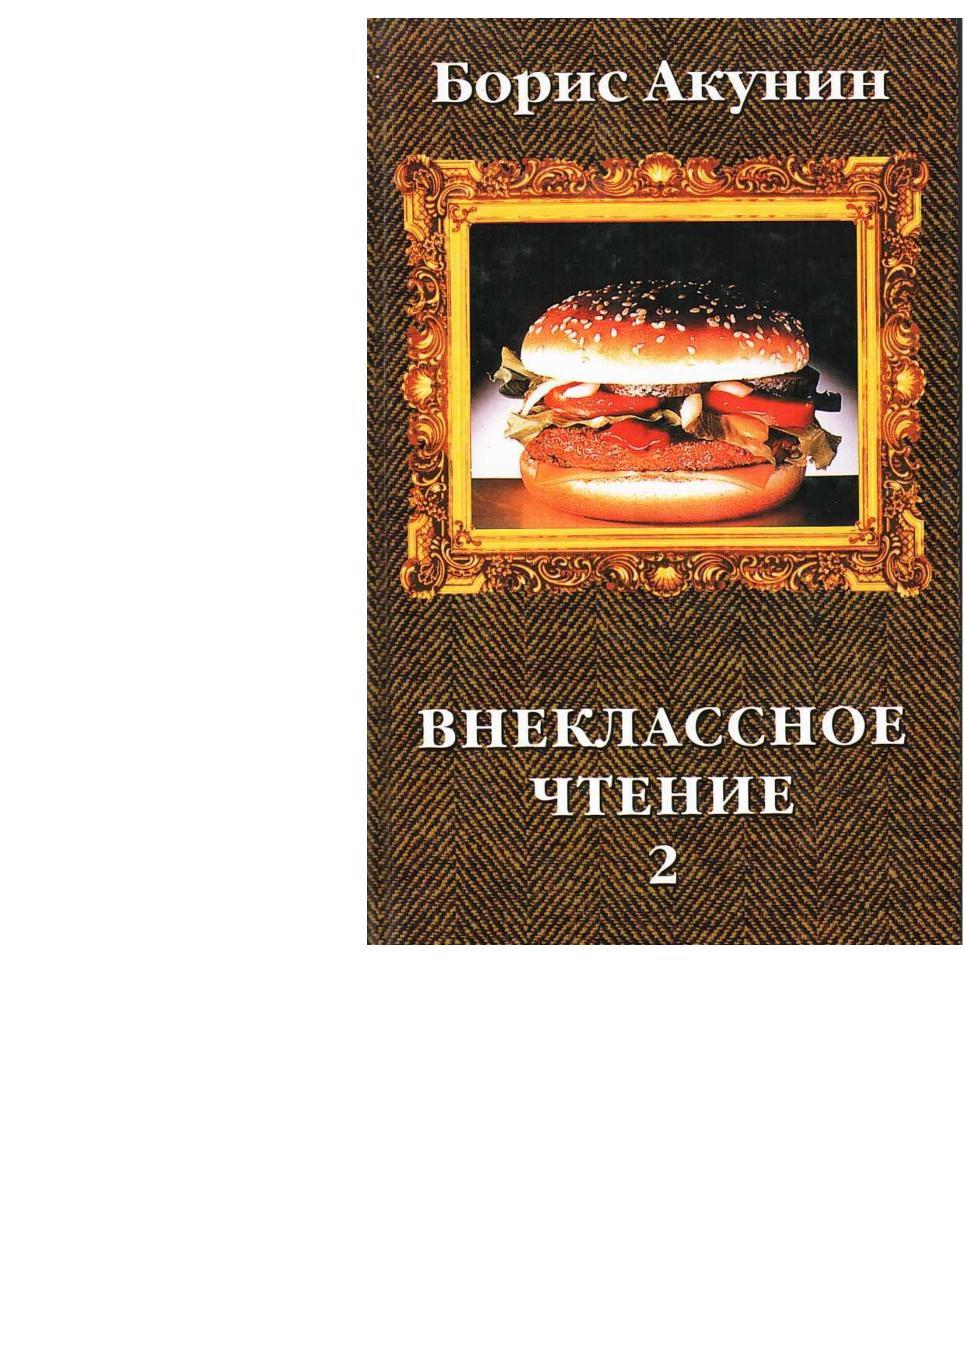 Акунин Б. Внеклассное чтение. Роман. Т. 2. – М., 2002.